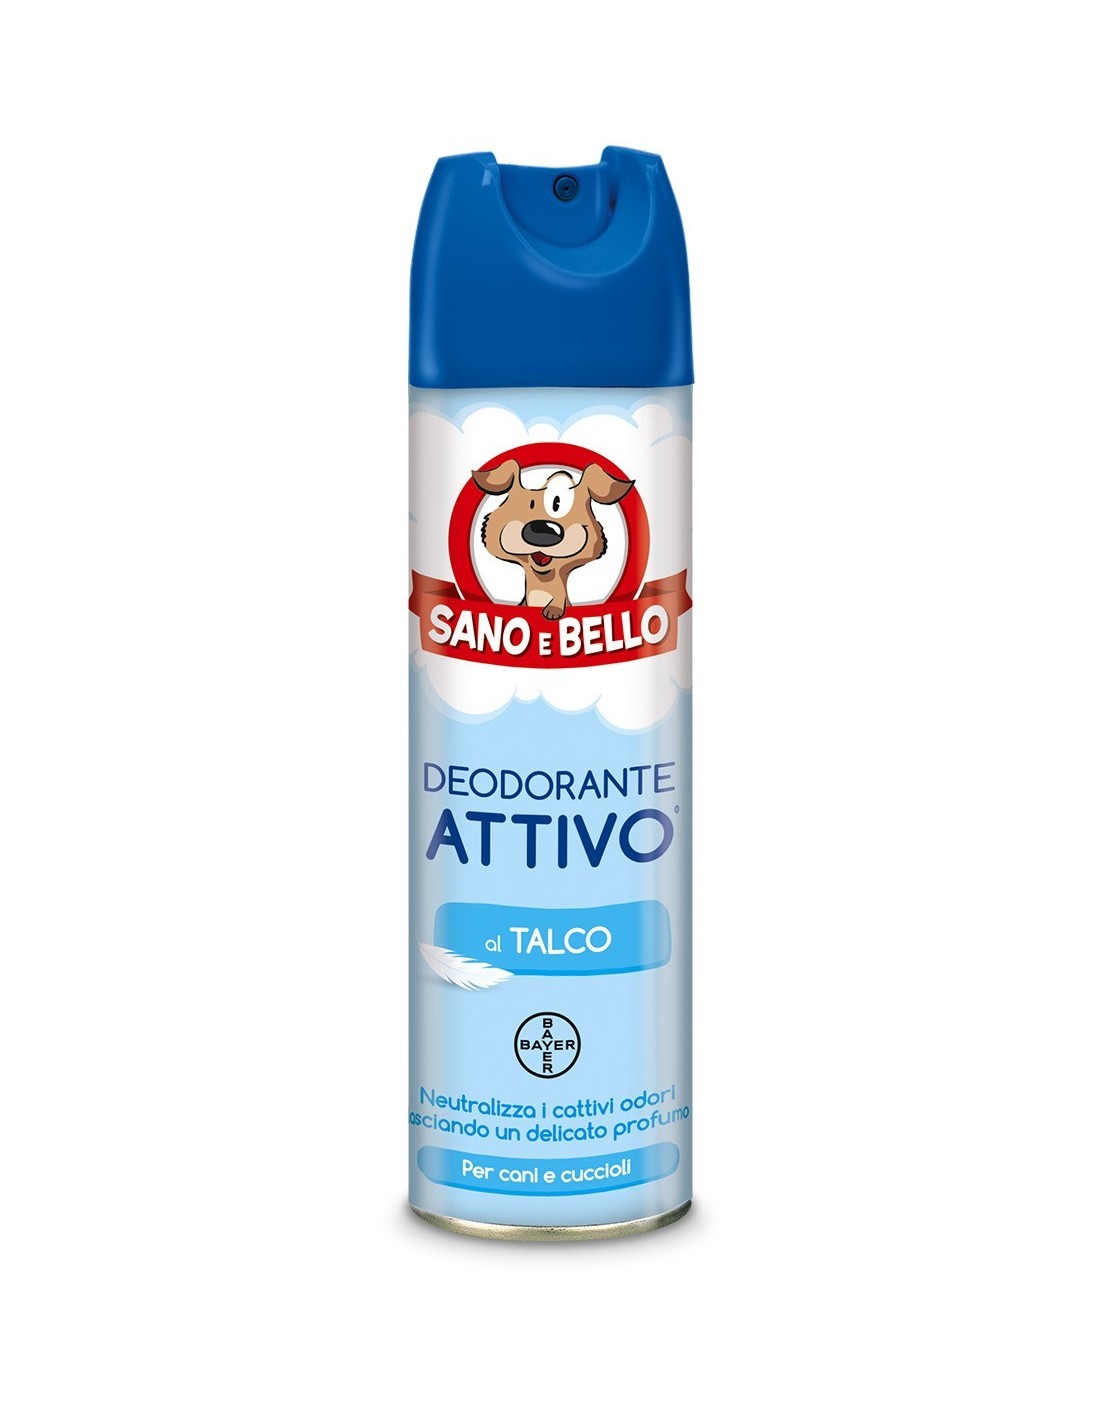 Deodorante Attivo Al Talco Sano E Bello Bayer 250ml